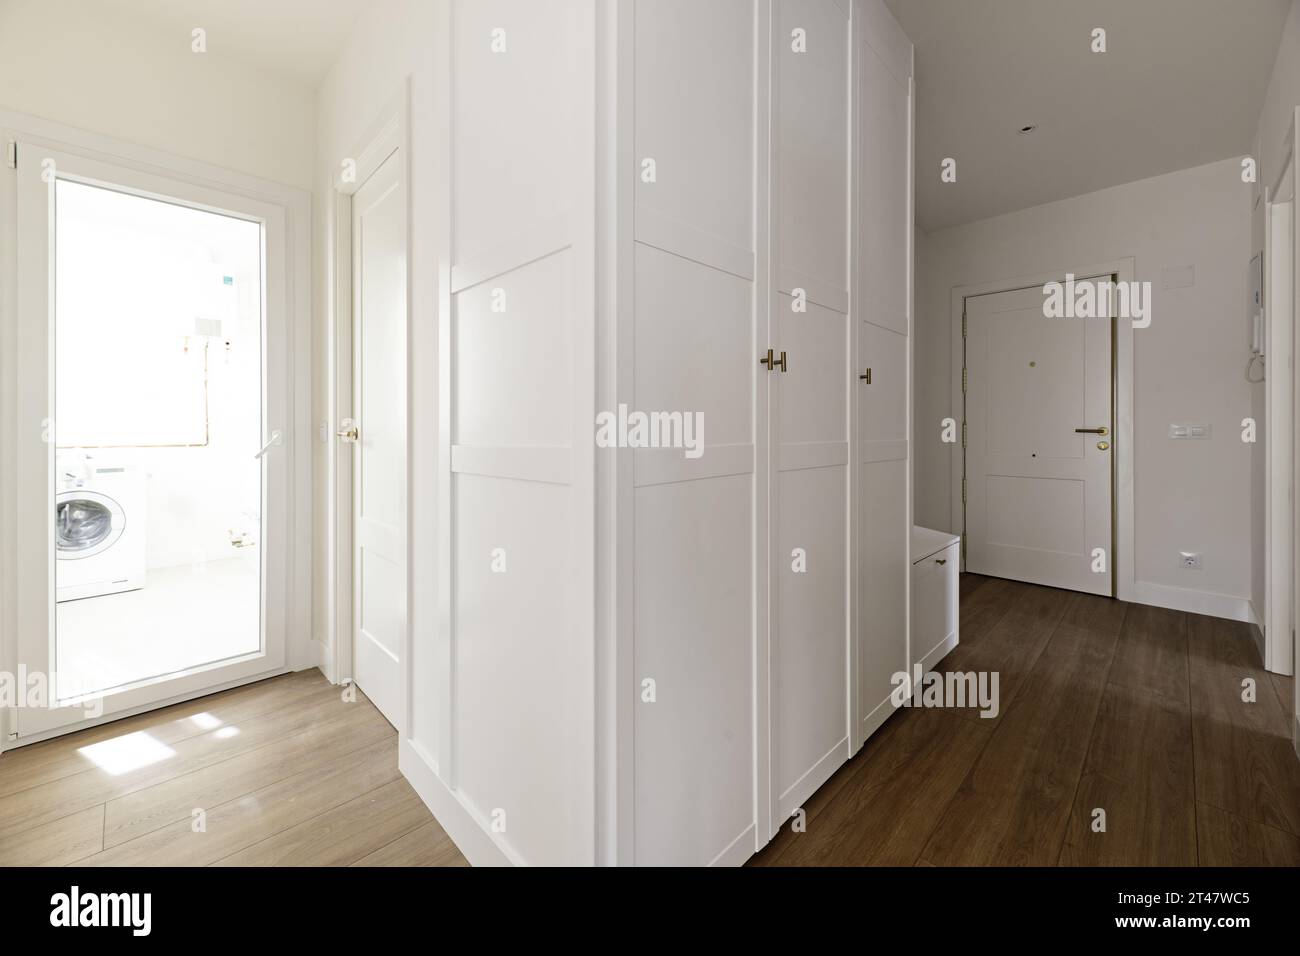 Couloir d'une maison résidentielle avec armoires encastrées personnalisées Banque D'Images